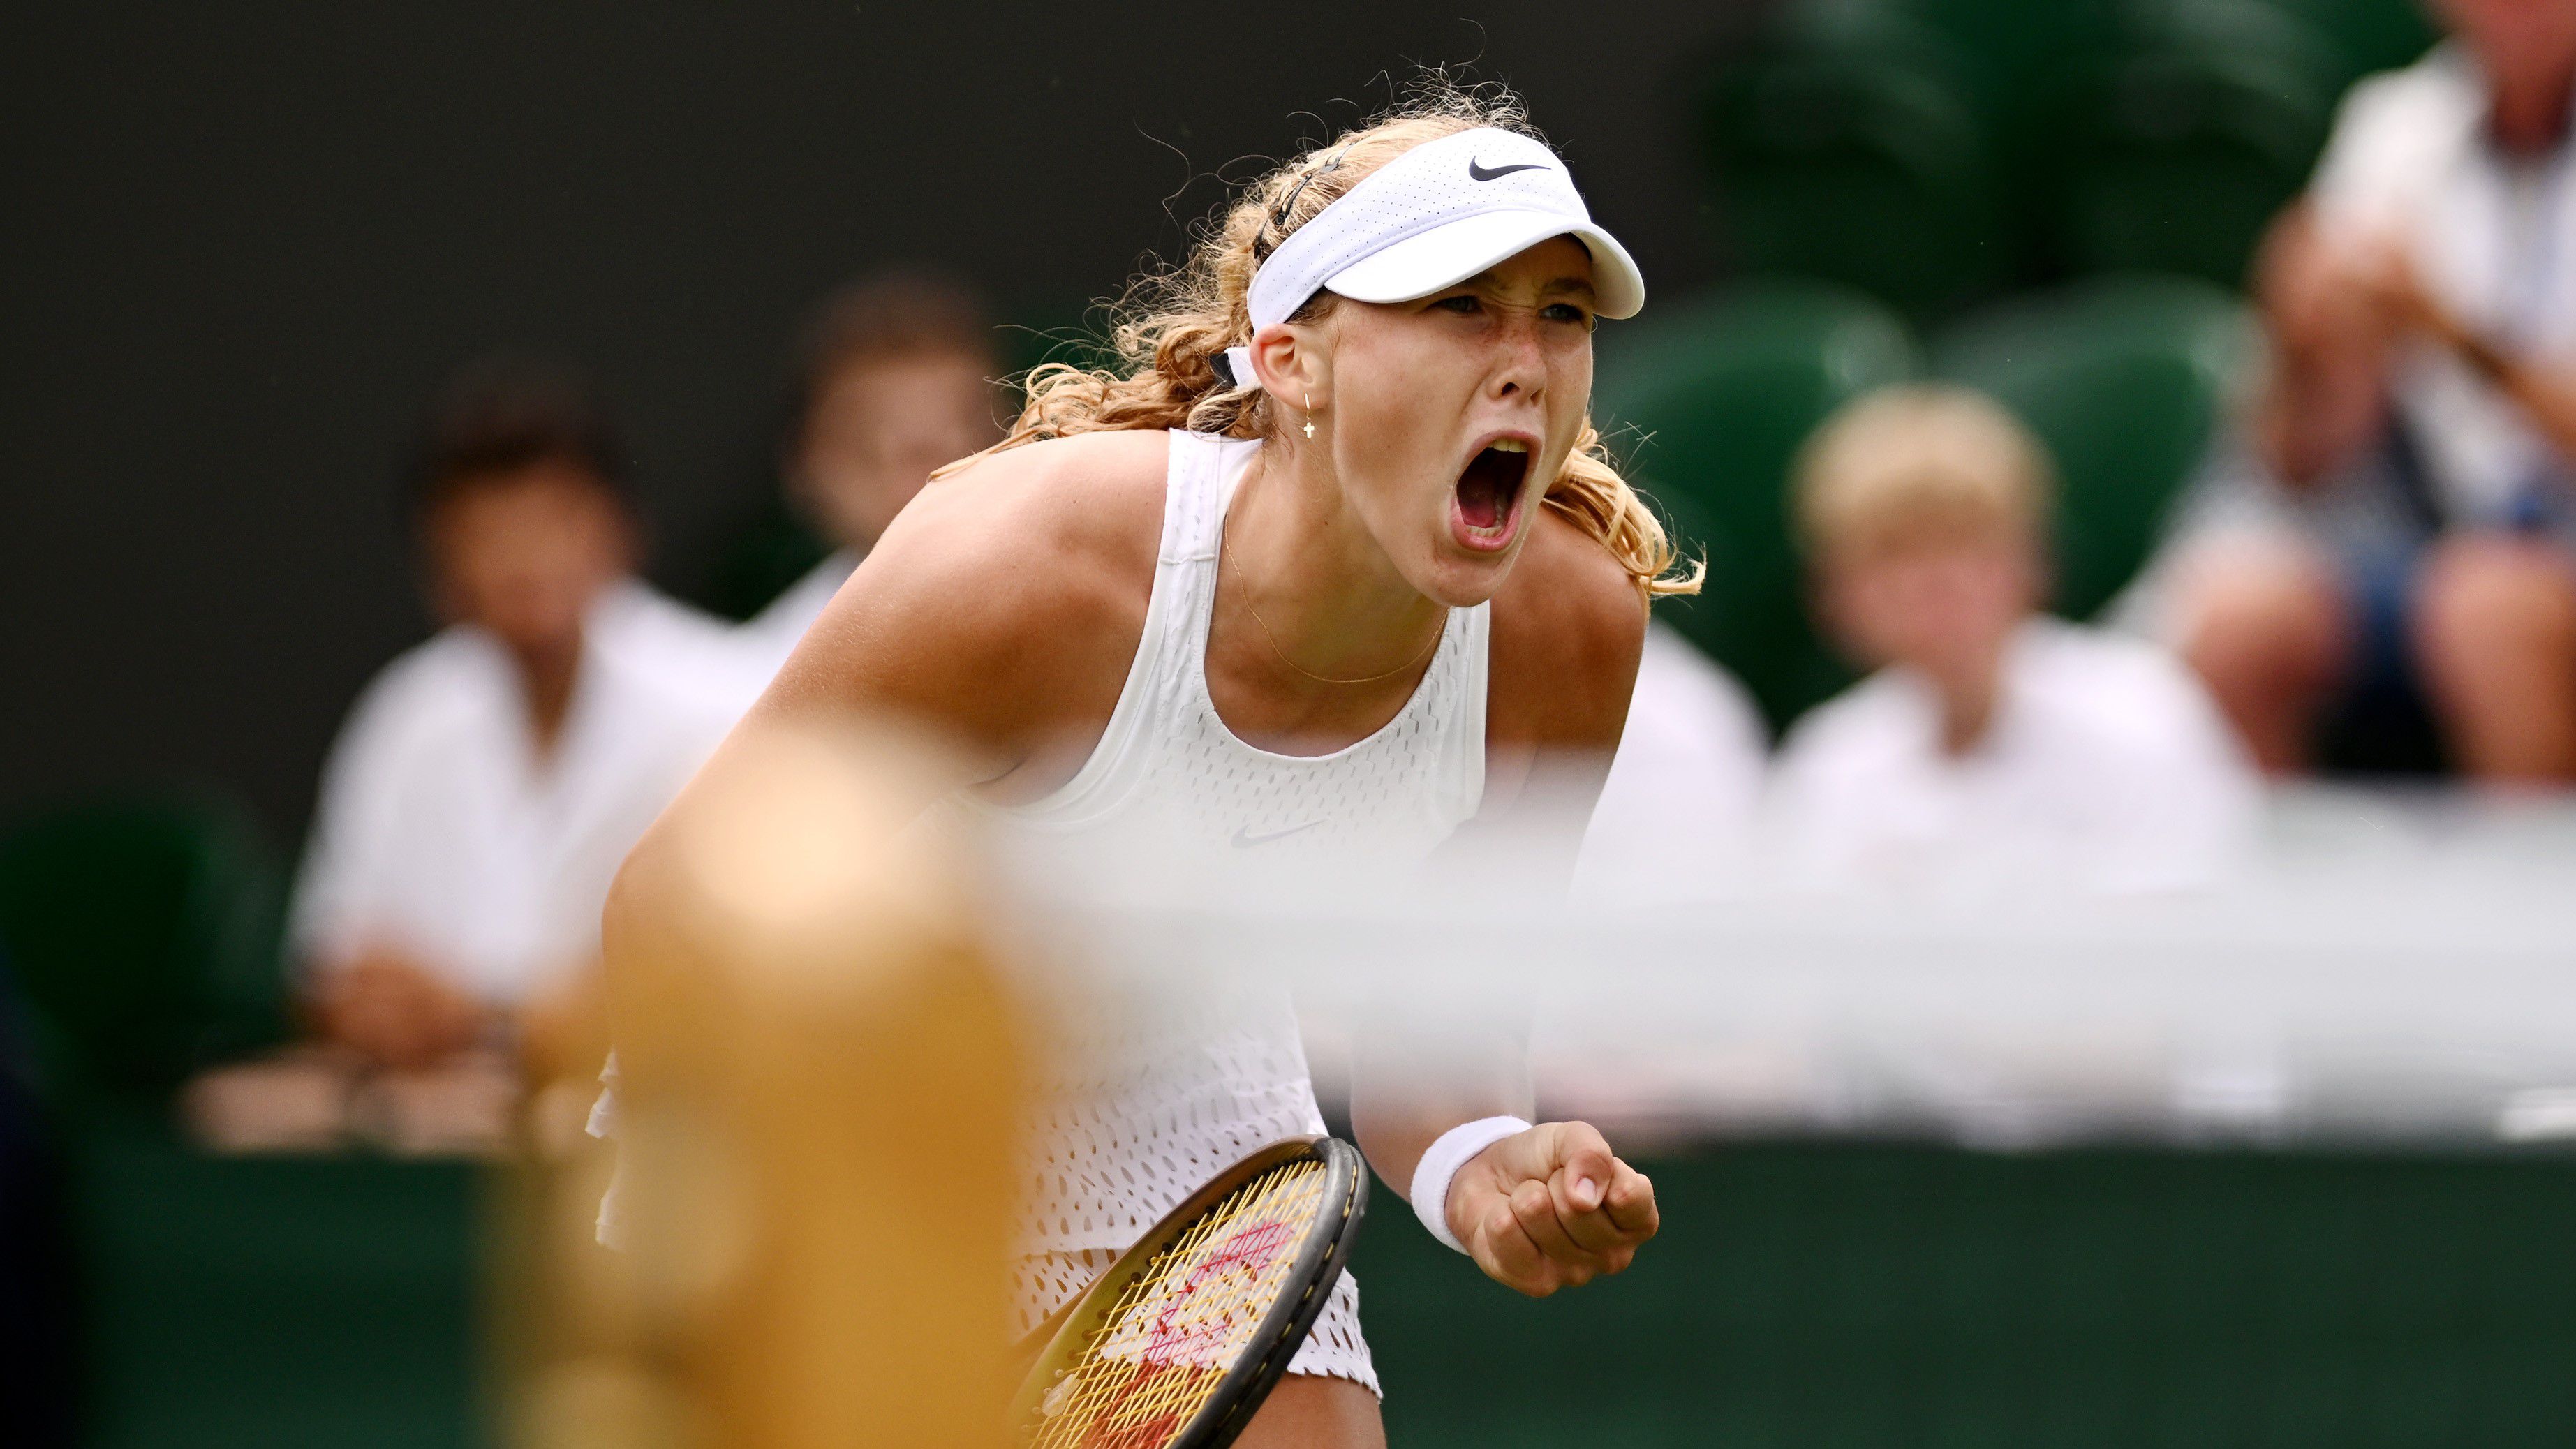 Folytatódott a 16 éves orosz lány tündérmeséje Wimbledonban